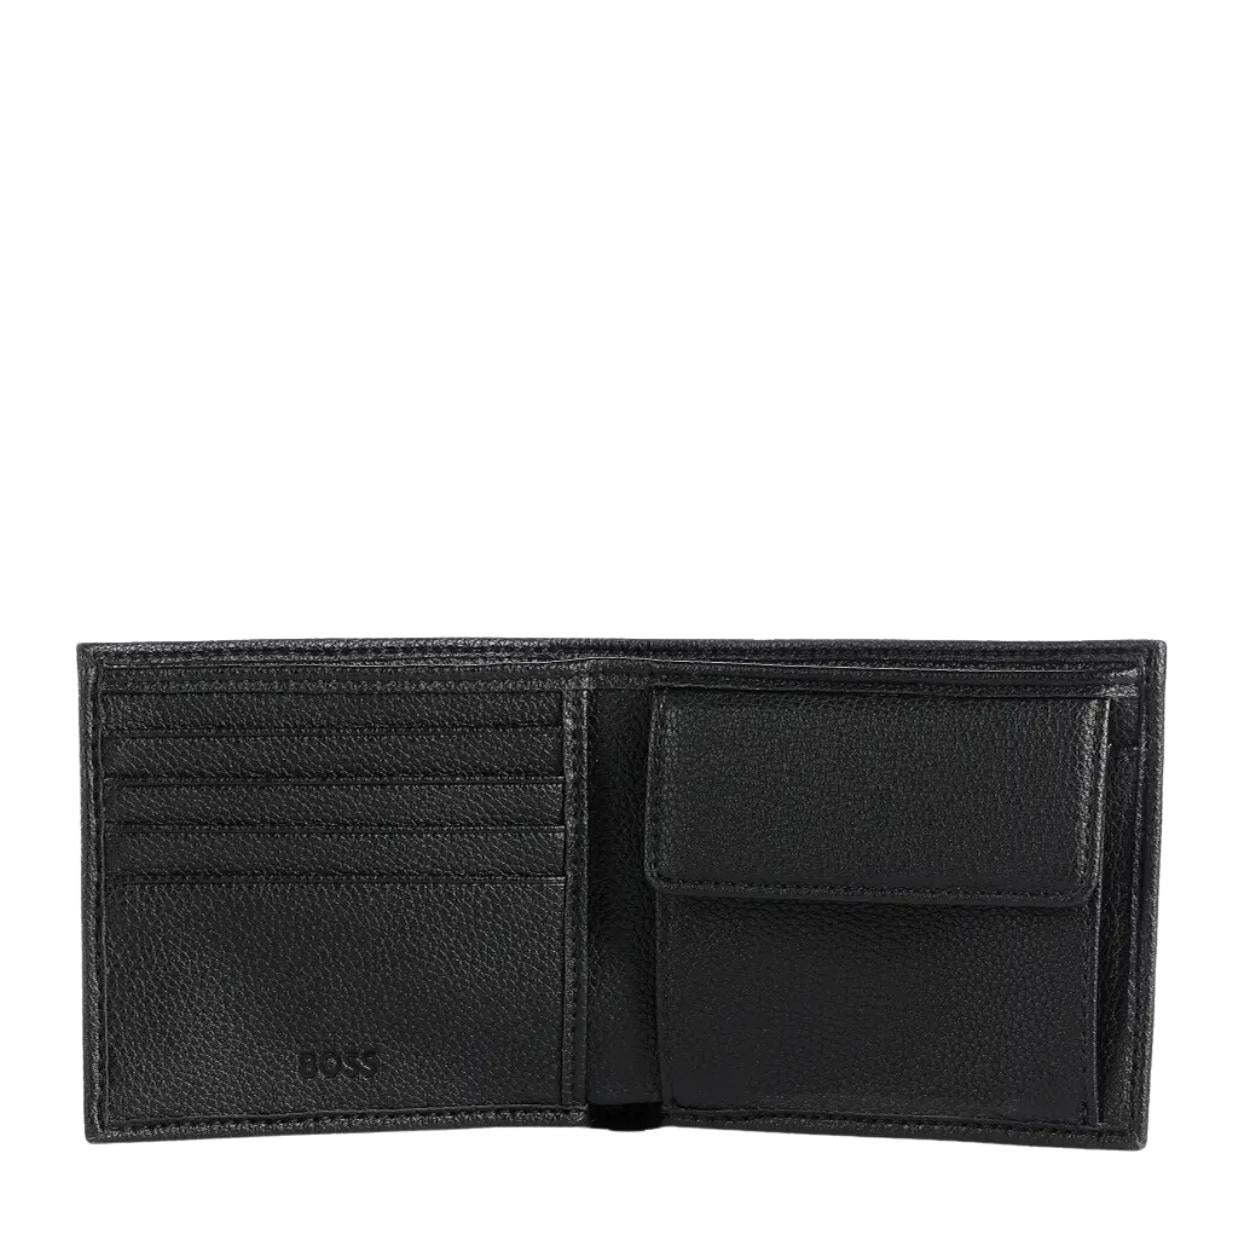 BOSS Signature Stripe Ray Coin Pocket Black Billfold Wallet